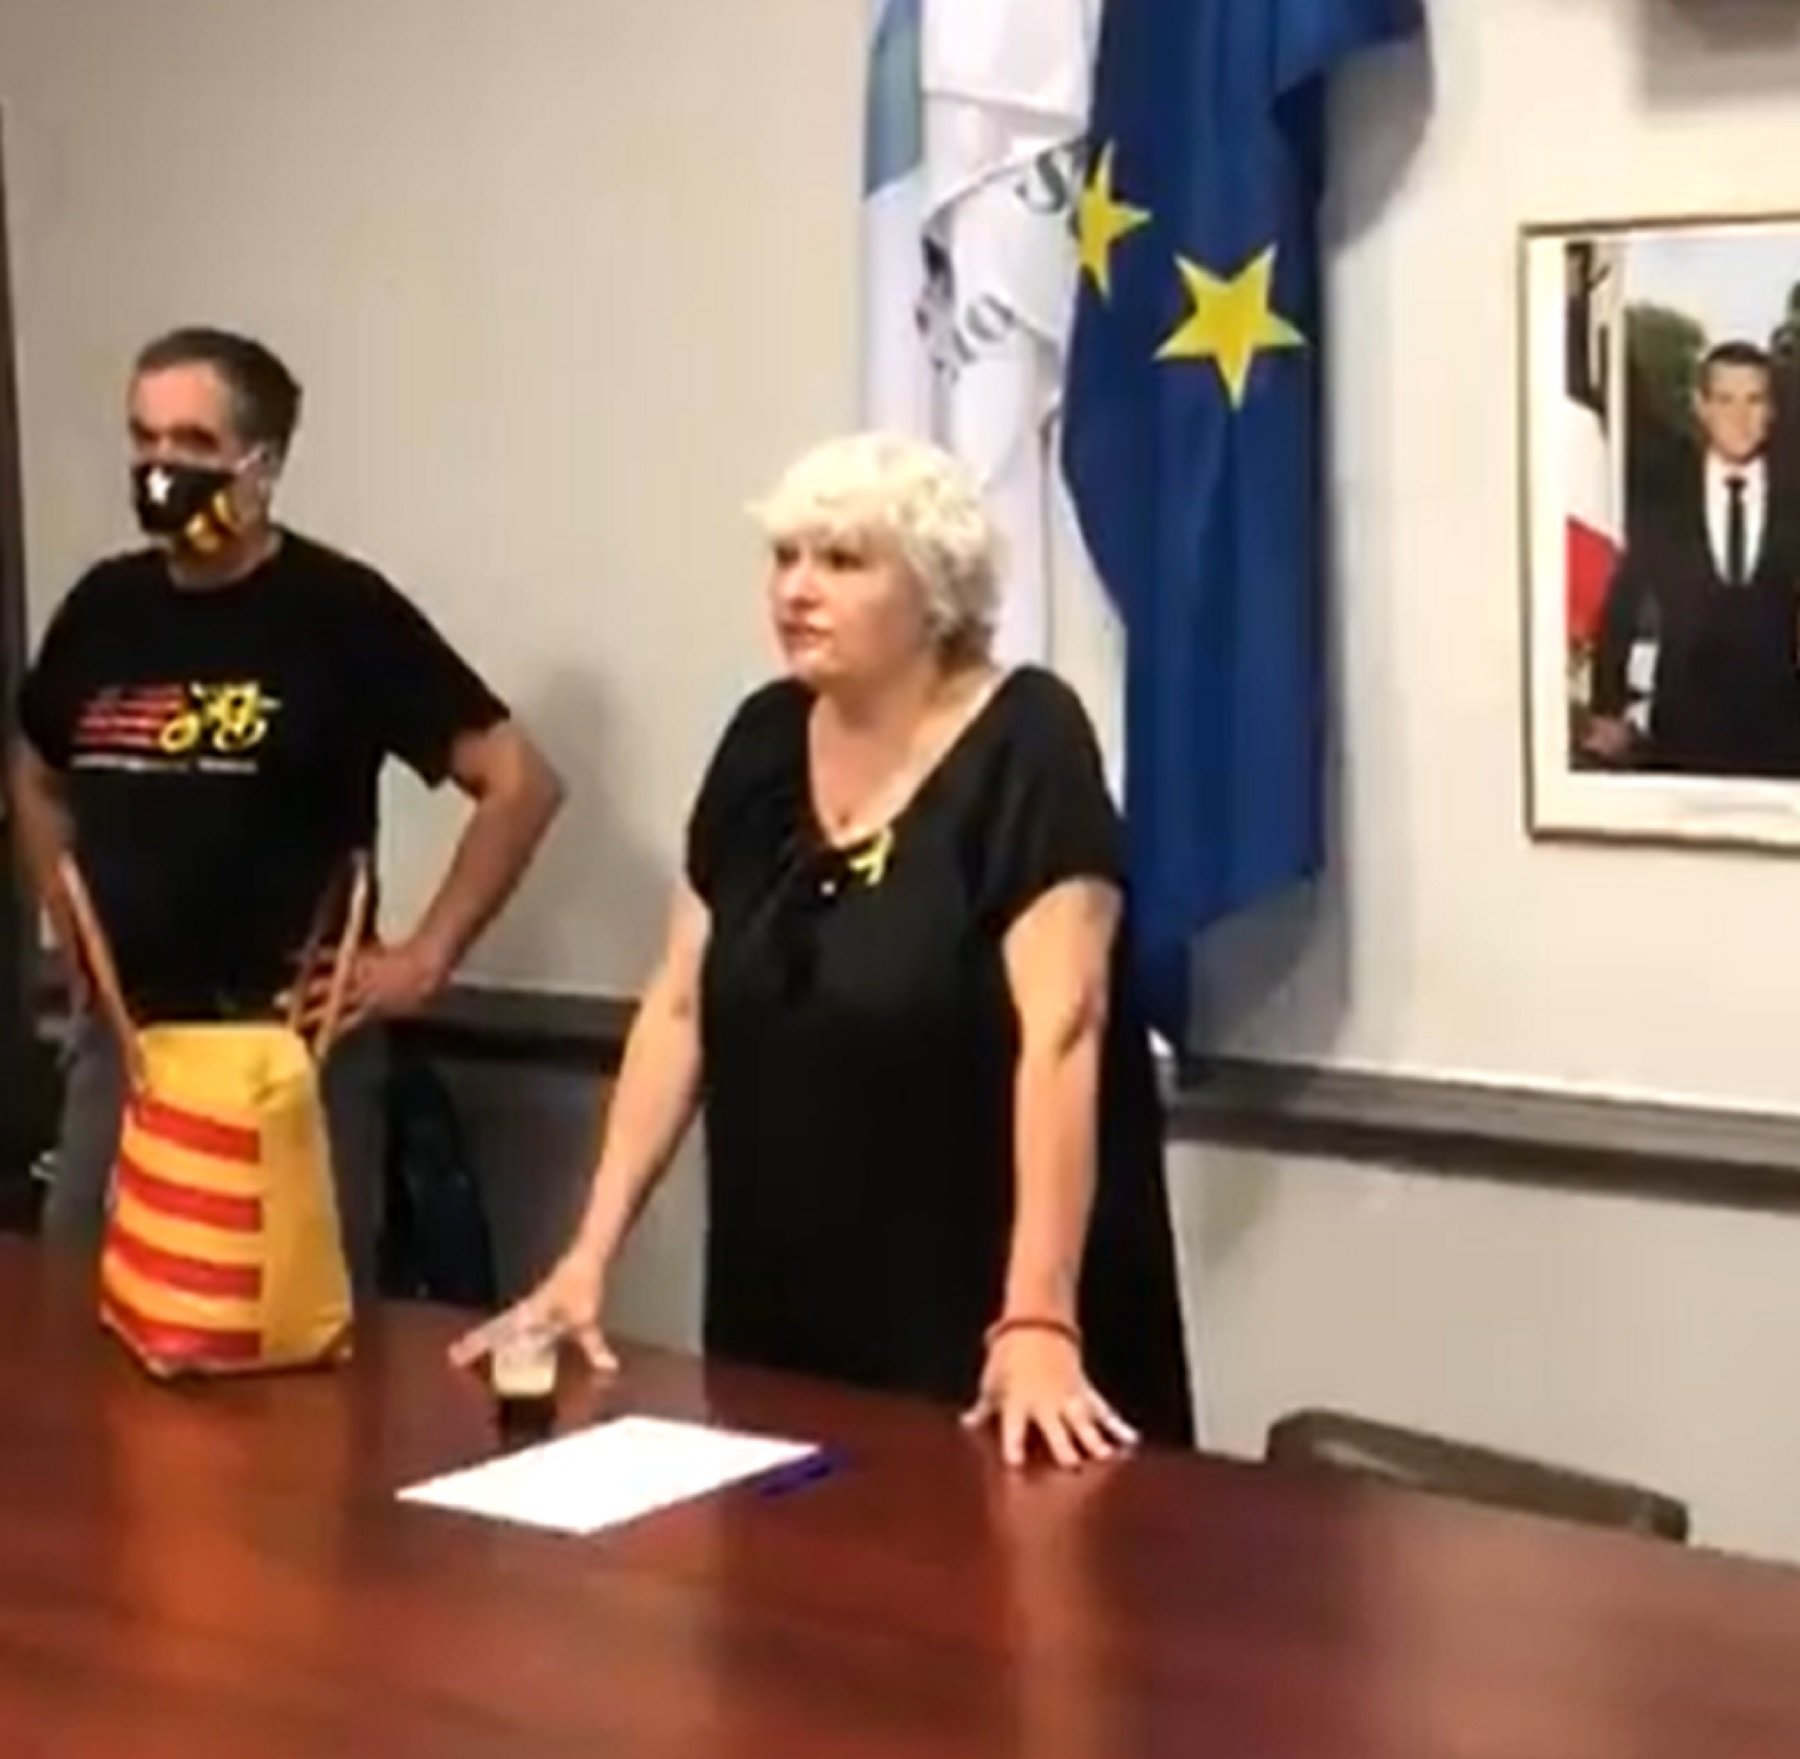 Una alcaldesa de la Catalunya Nord desafía la justicia francesa y habla en catalán en un pleno